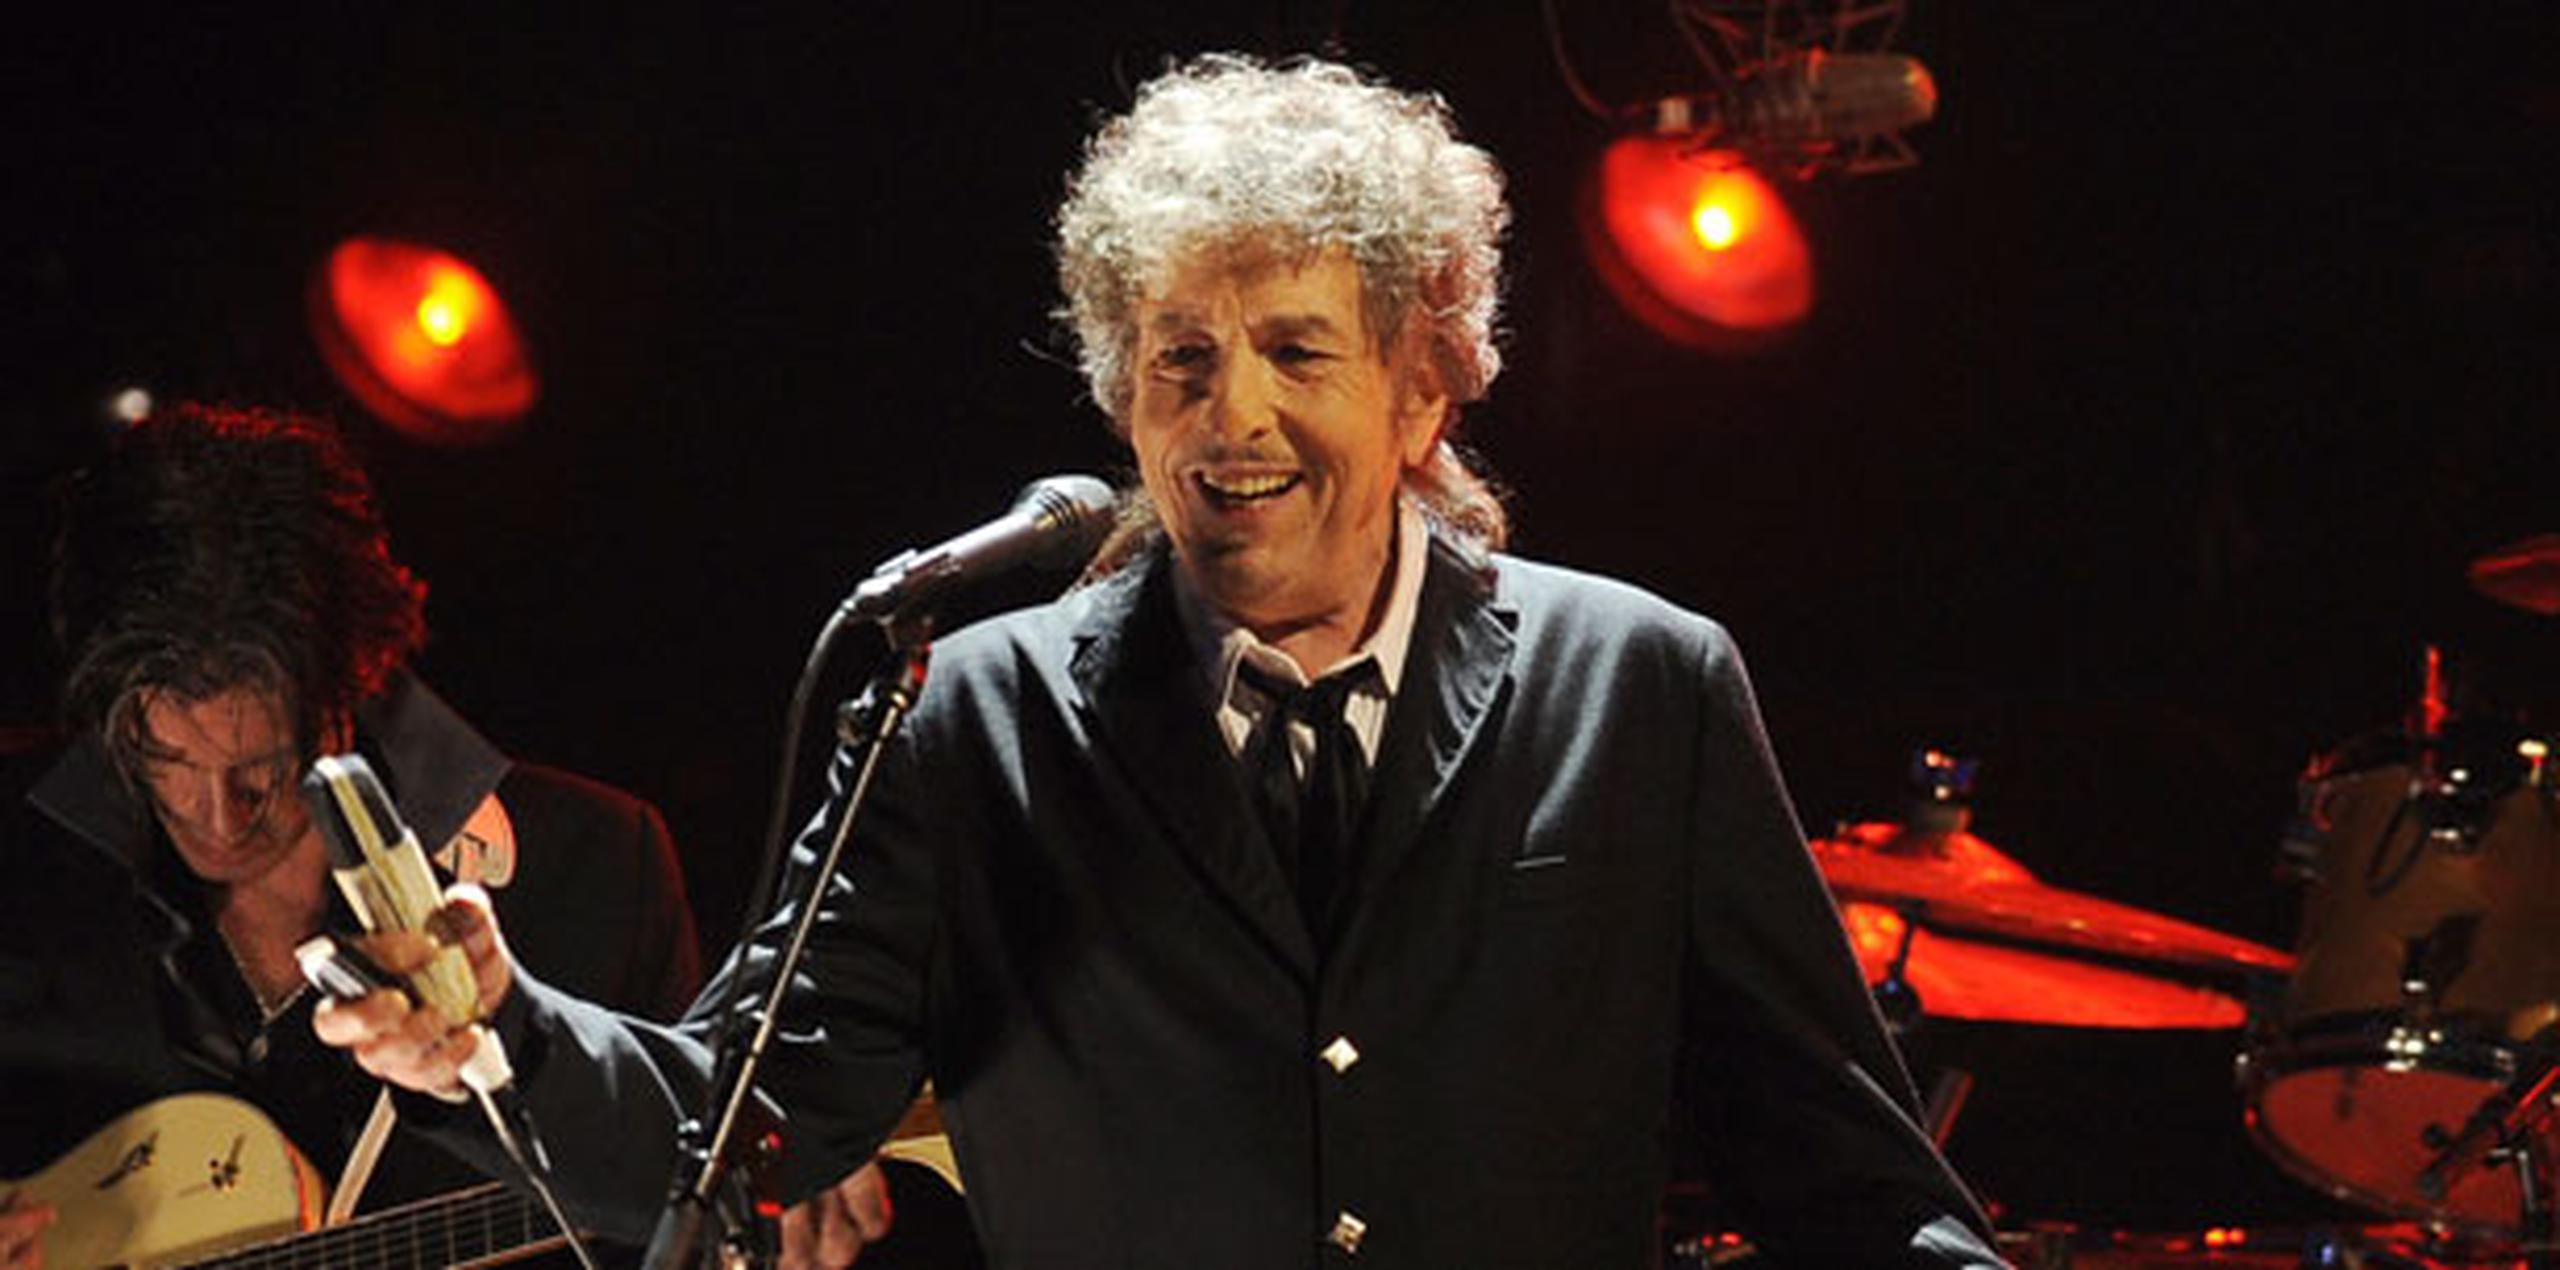 El Nobel para Dylan es una "reivindicación" para el profesor inglés Gordon Ball, quien nominó al cantautor para el premio 15 años consecutivos desde 1996. (Archivo)